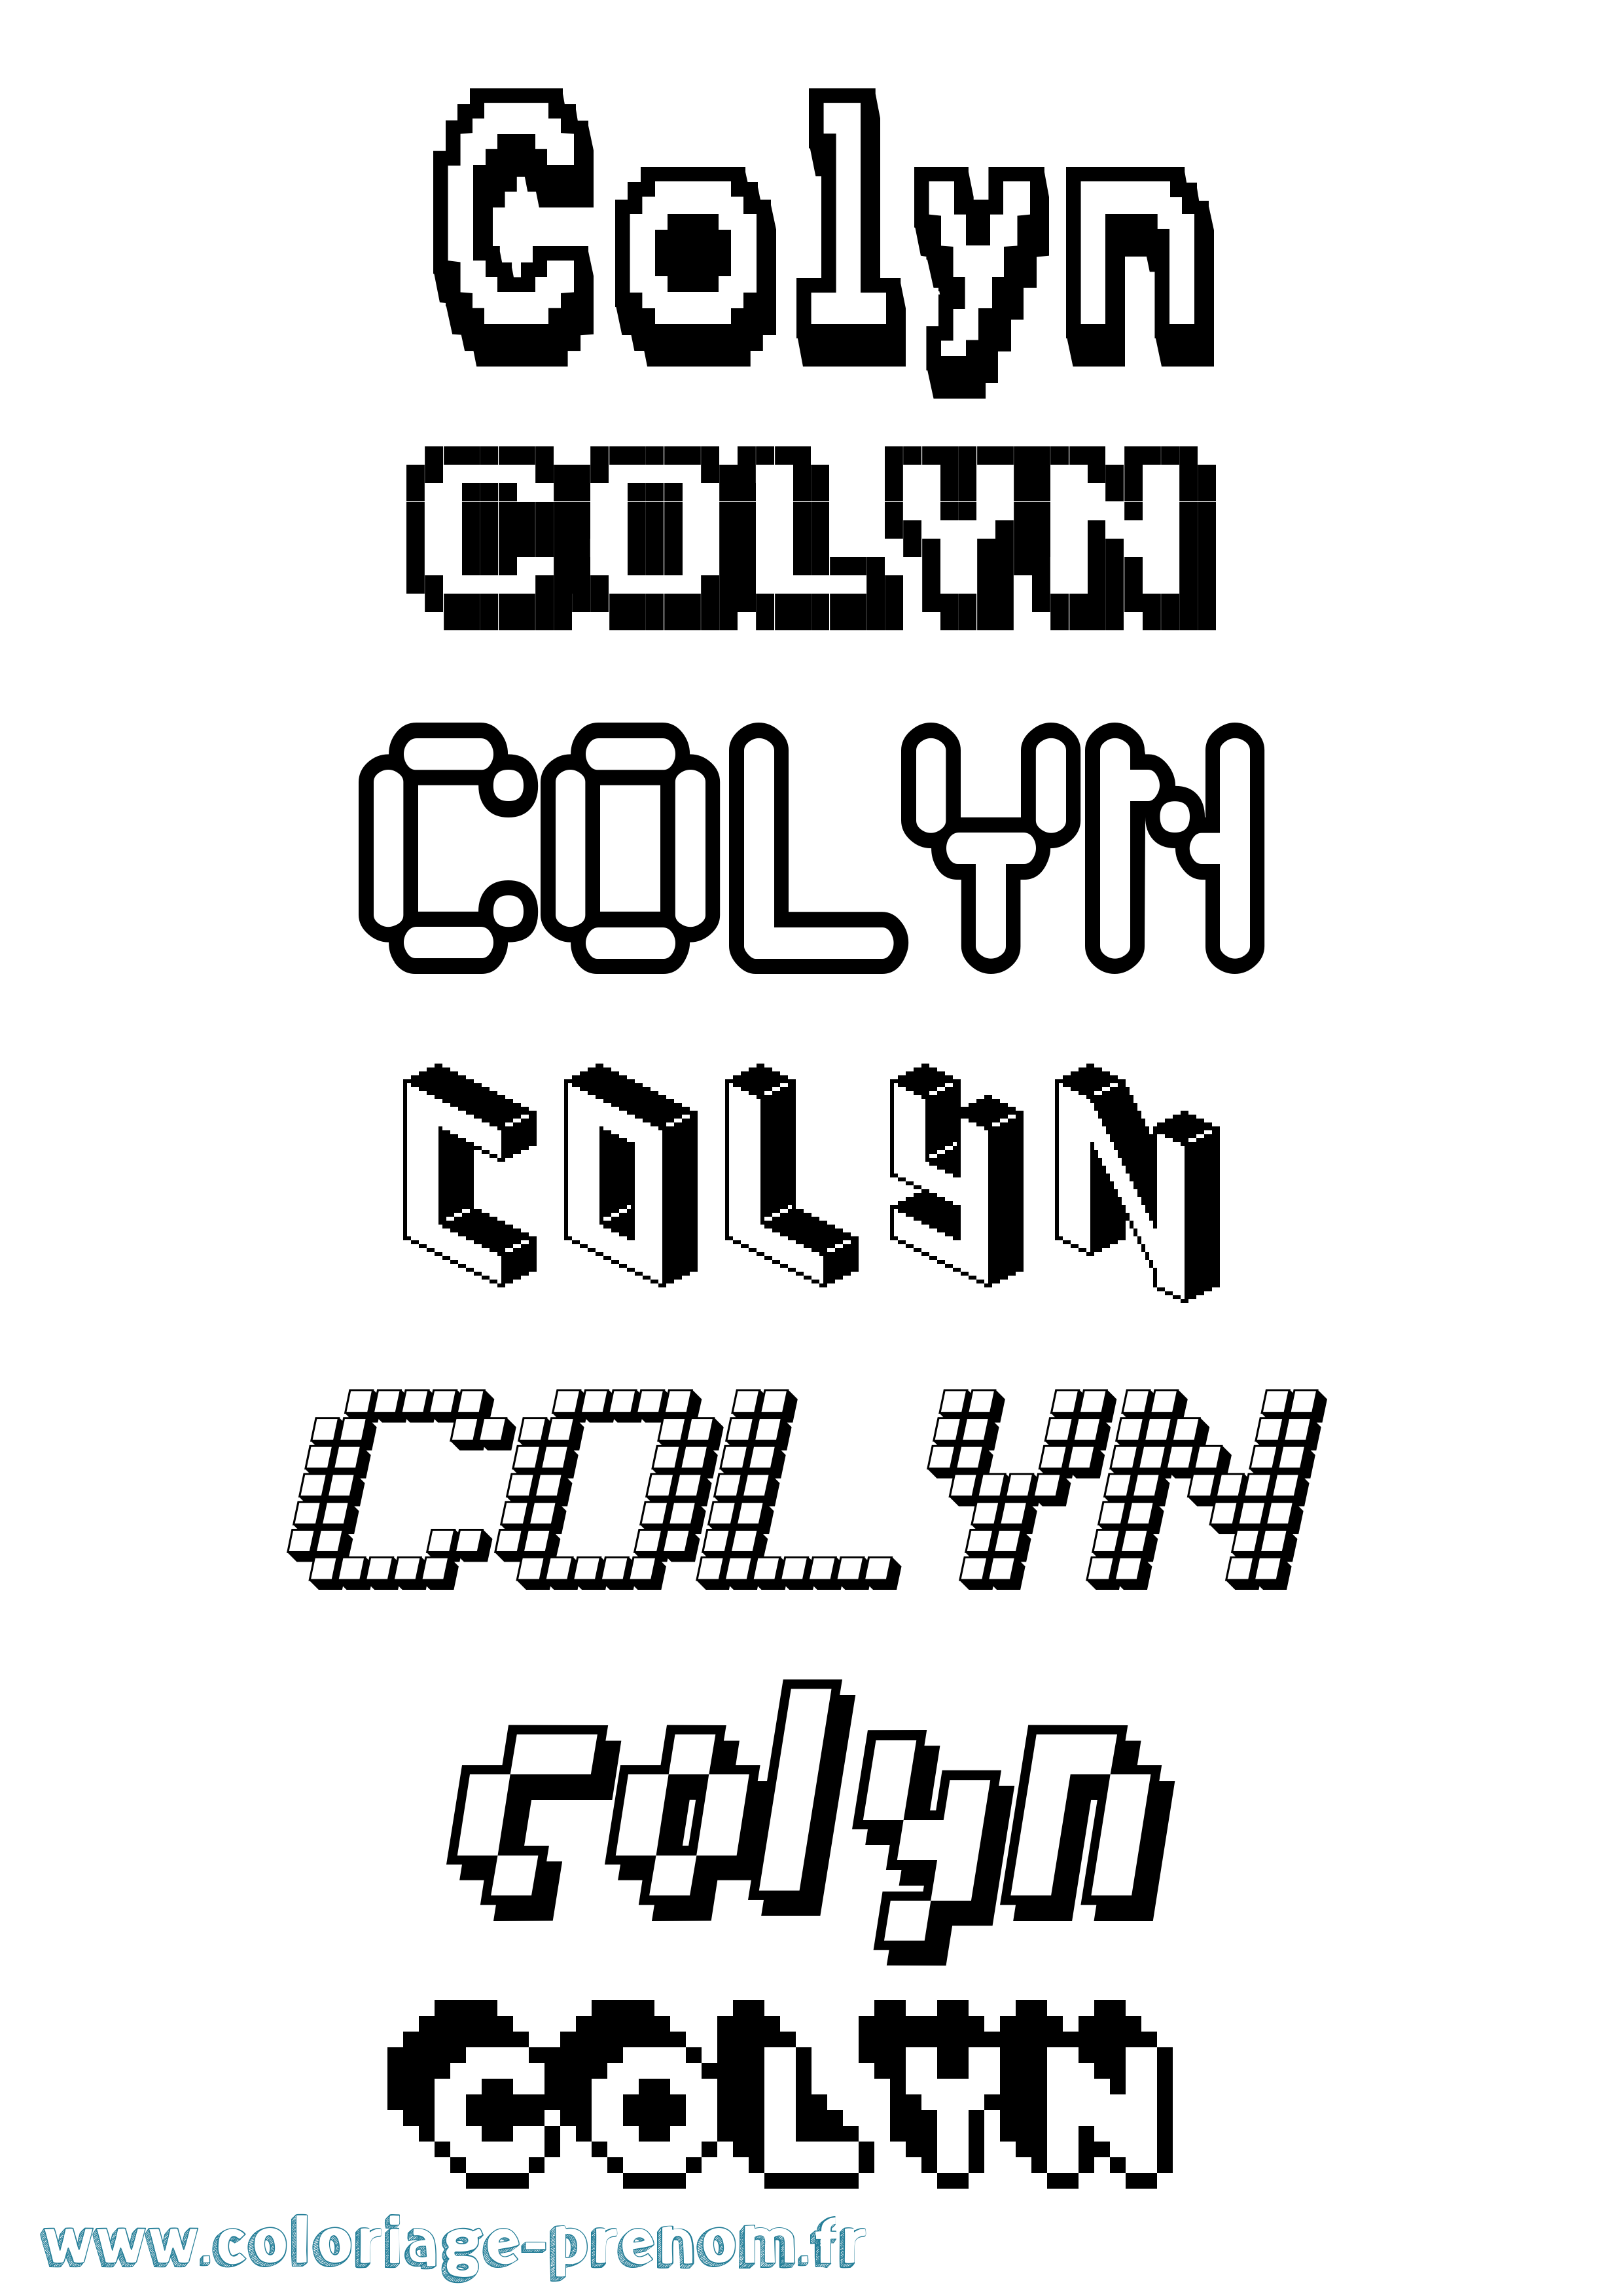 Coloriage prénom Colyn Pixel